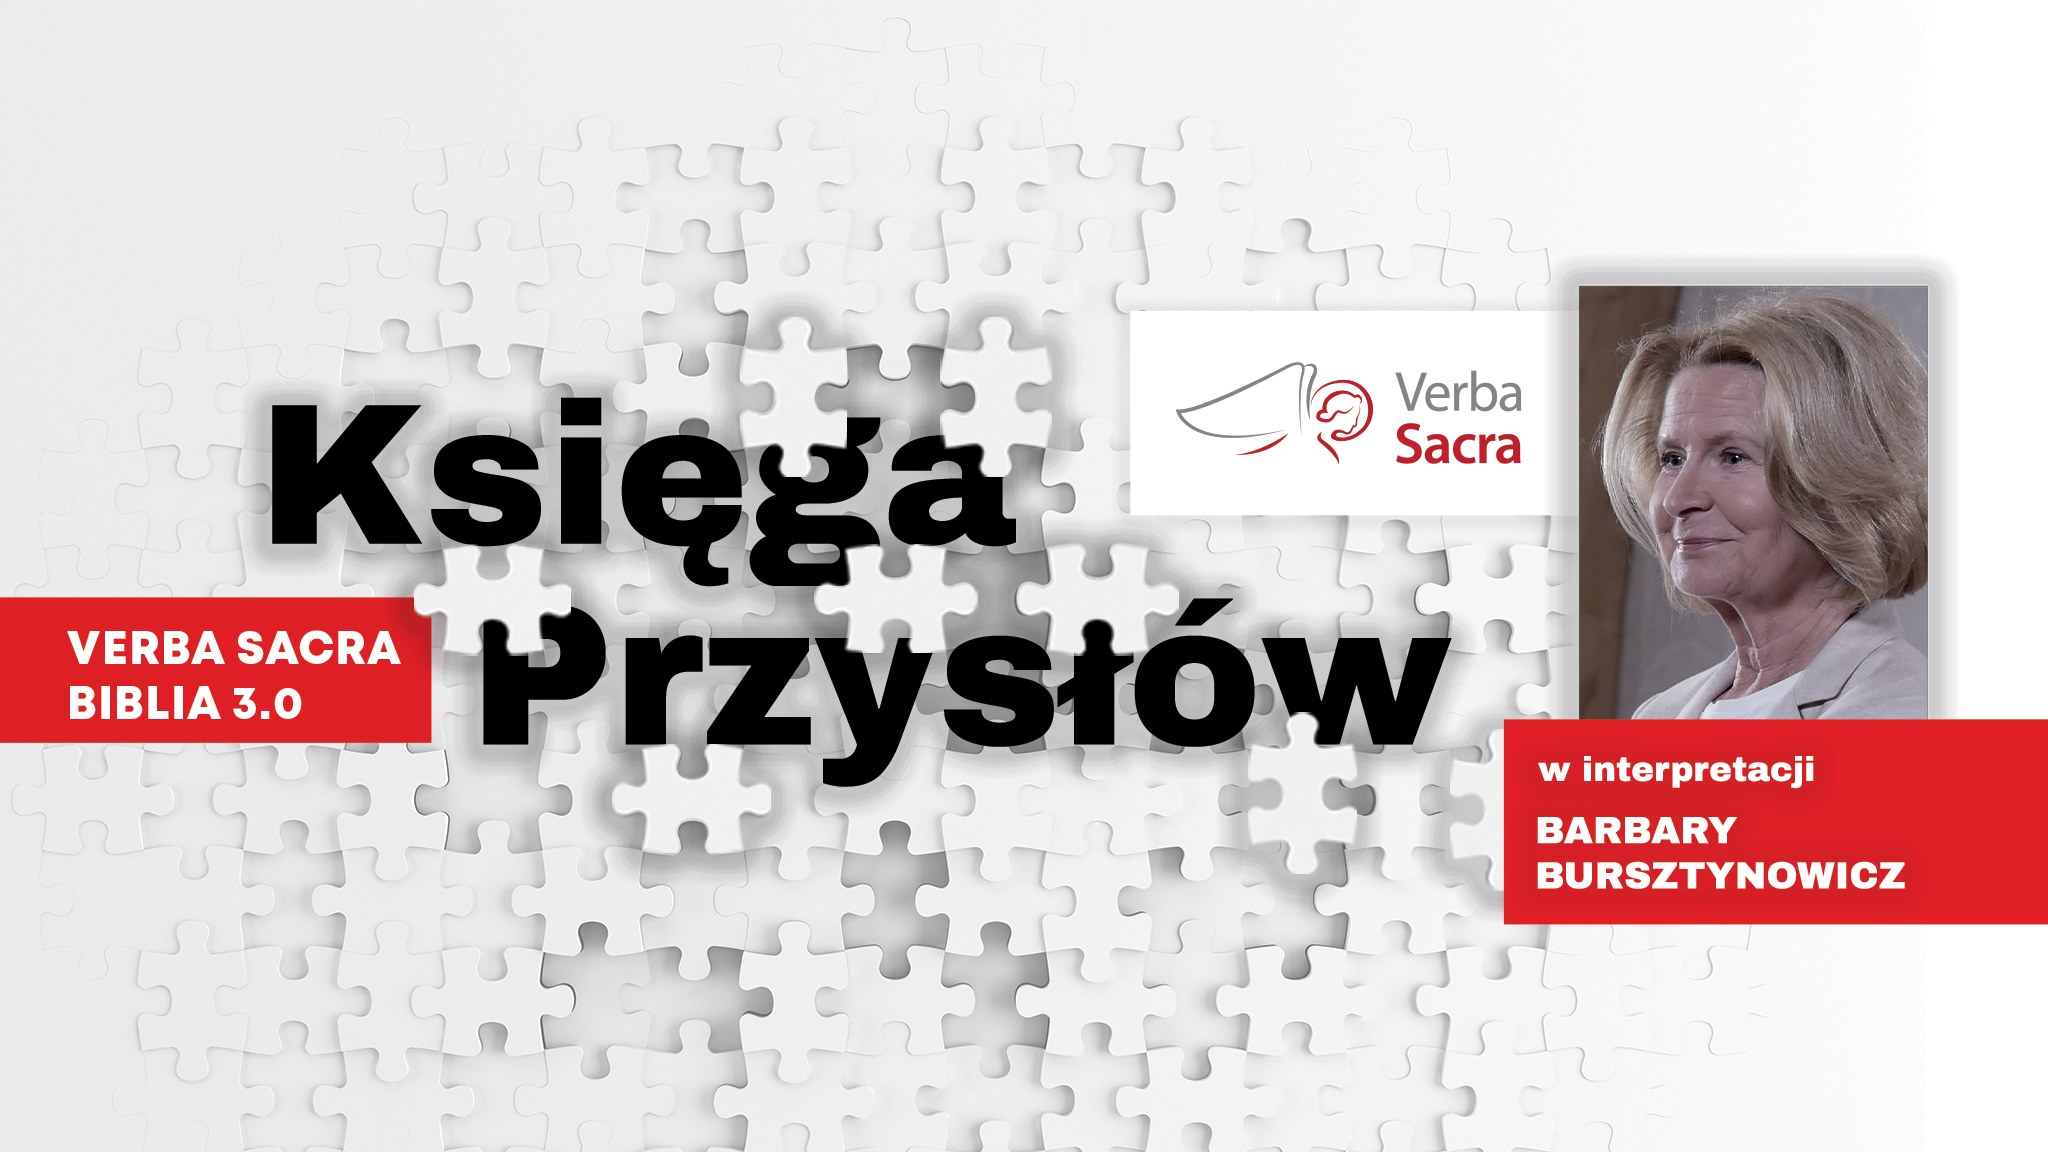 verba sacra 2021 bursztynowicz - Organizator